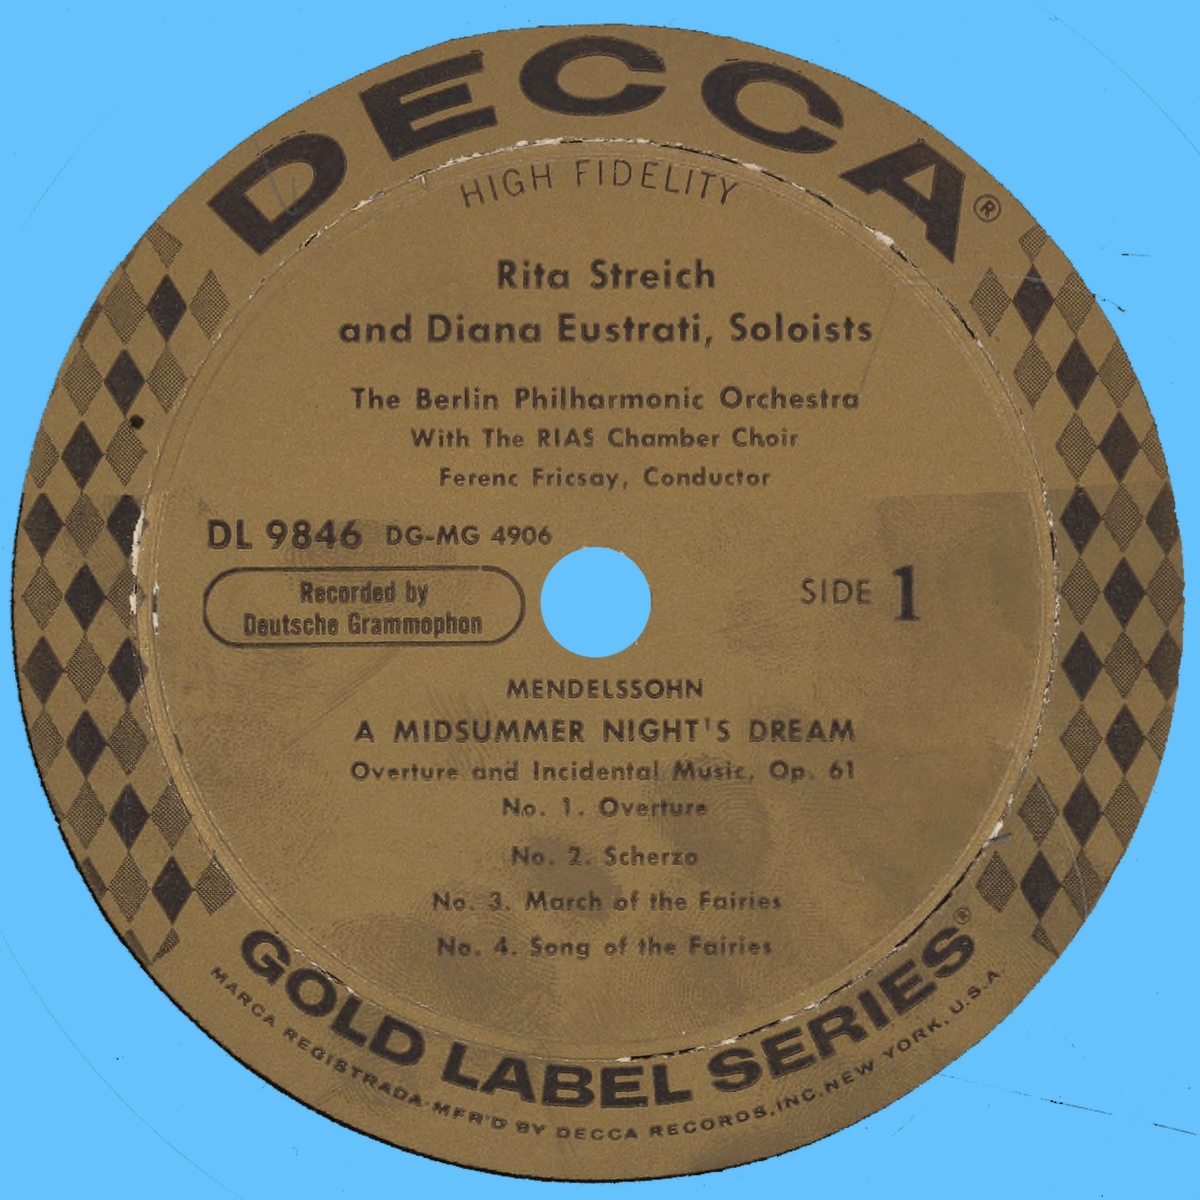 Étiquette recto du disque Decca DL 9846